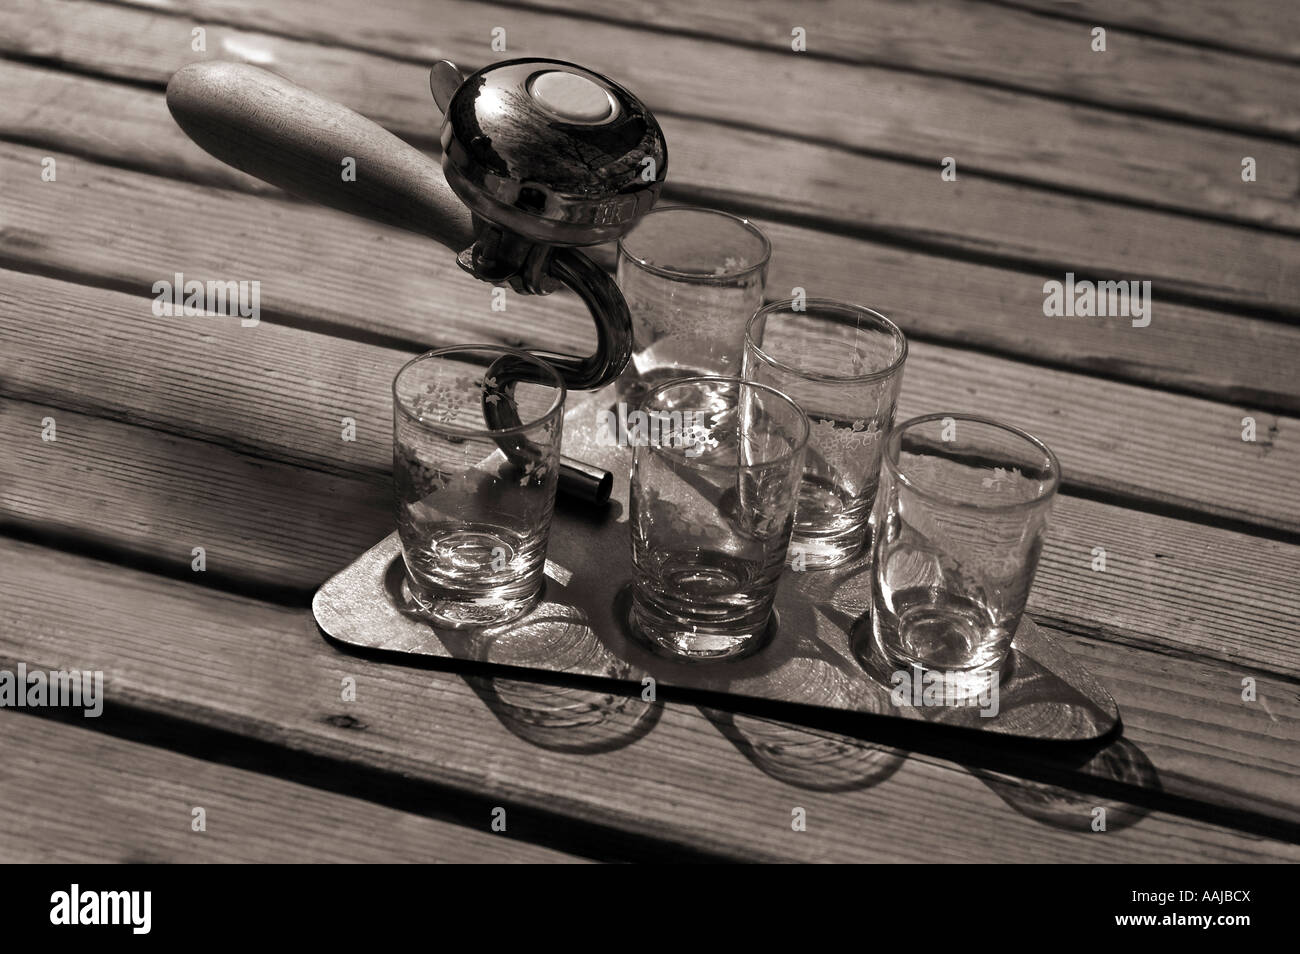 L'outil de construction de la truelle avec verres vide de vodka russe Humour Alcool souvenirs artisanat Banque D'Images